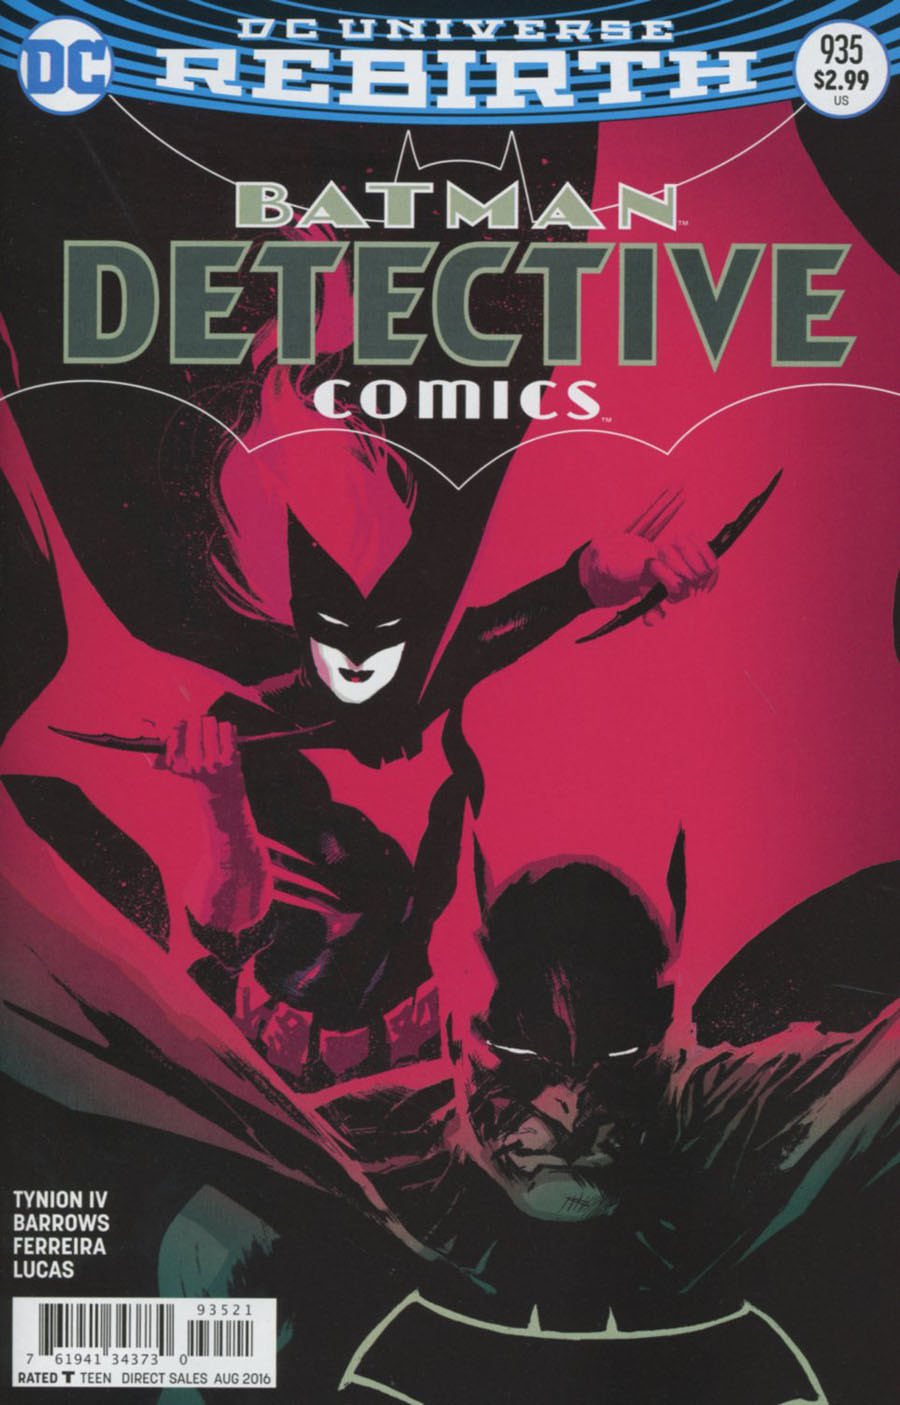 Detective Comics Comics Vol. 1 #935